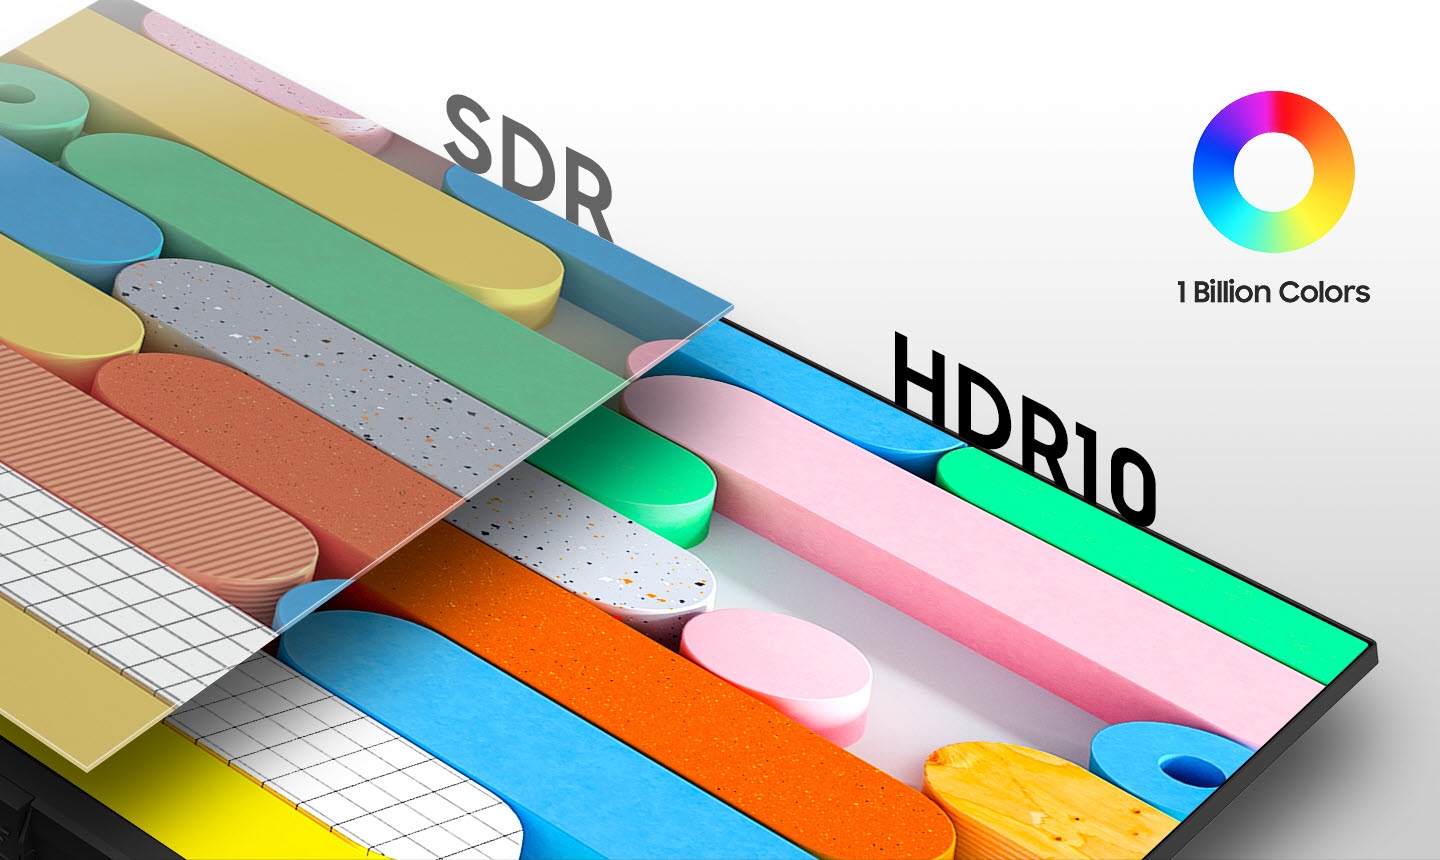 Vergleich zwischen dem SDR-Bildschirm auf der linken Seite und dem HDR10-Bildschirm auf der rechten Seite. Oben rechts befindet sich das Symbol für 1 Milliarde Farben.